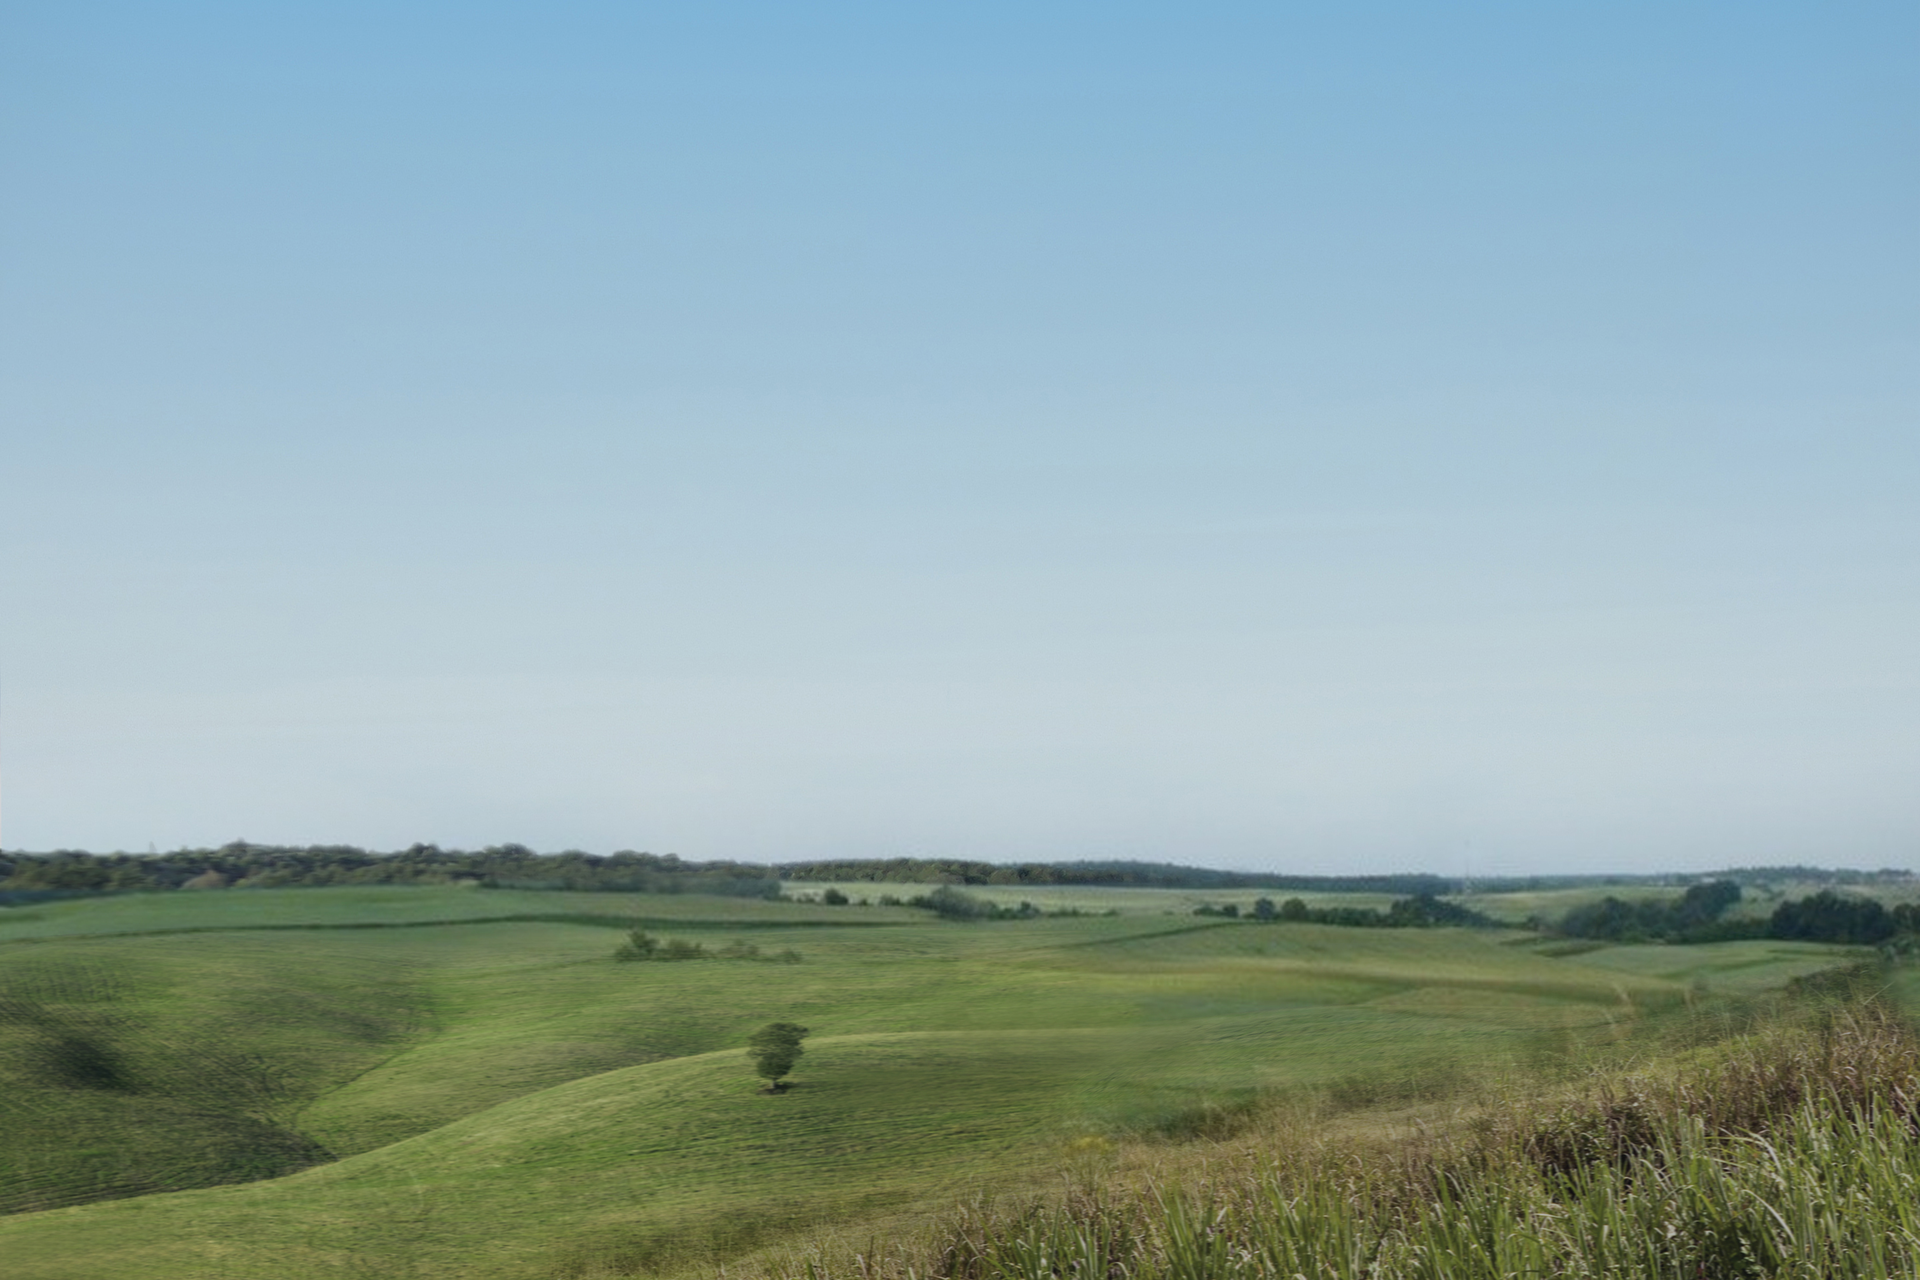 Na zdjęciu rozległy, lekko pofalowany teren rolniczy, porośnięty zieloną roślinnością. Górną część zdjęcia zajmuje jasne niebo.